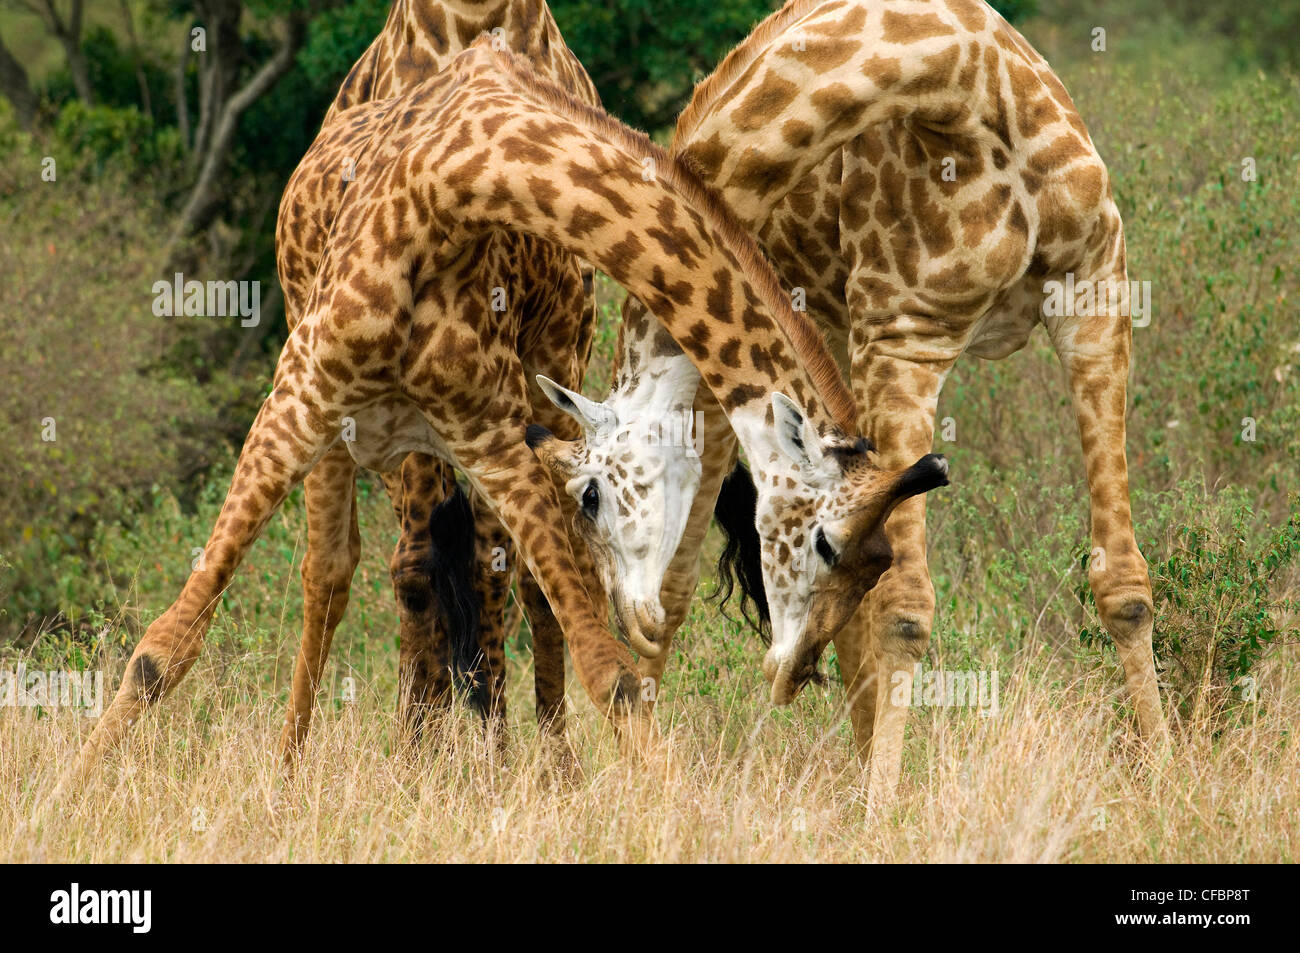 Mâle adulte, les girafes (Giraffa camelopardalis) combat dans une position dominante, l'affichage de la réserve de Masai Mara, Kenya, Afrique de l'Est Banque D'Images